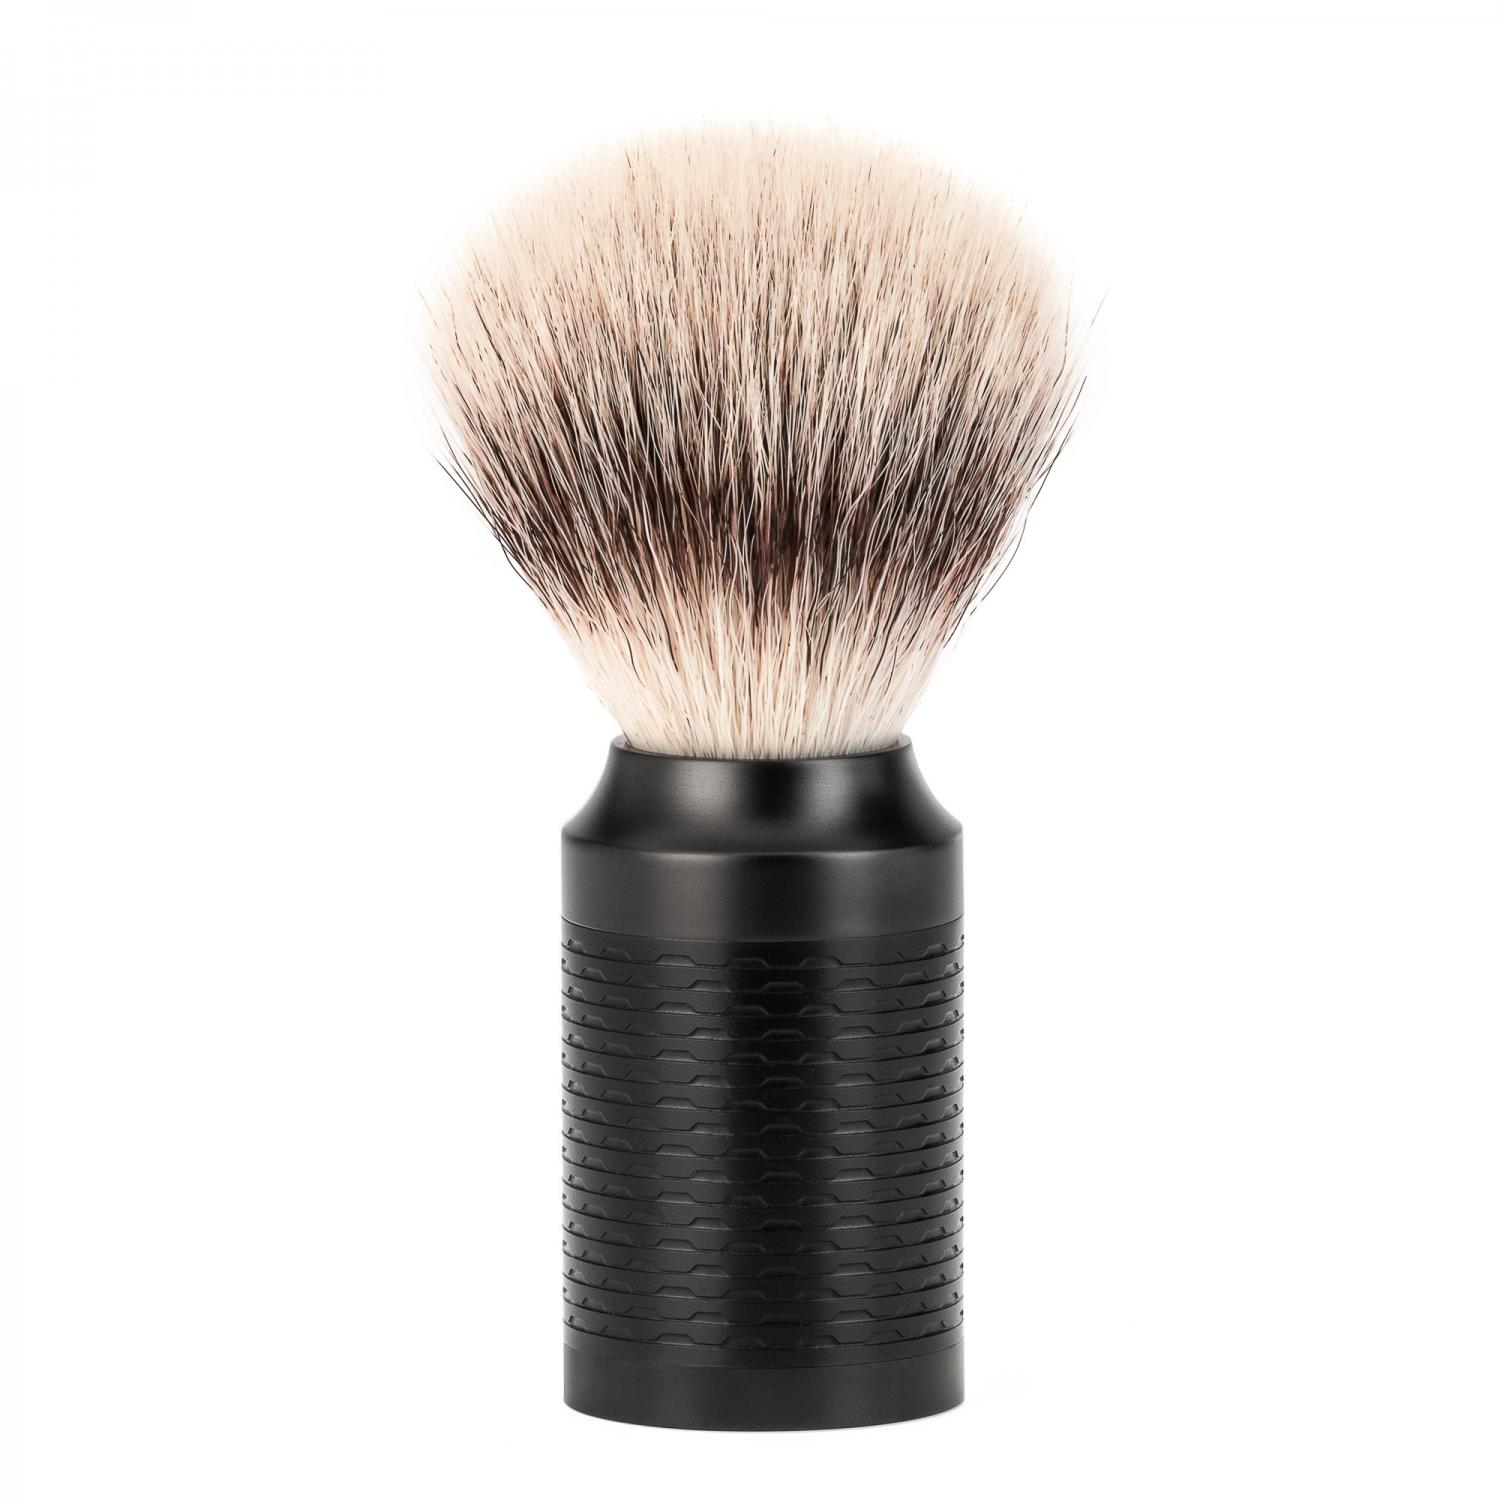 Conjunto de barbear MÜHLE Rocca preto de aço inoxidável de 3 peças de fibra Silvertip e lâmina de segurança, pincel de barbear